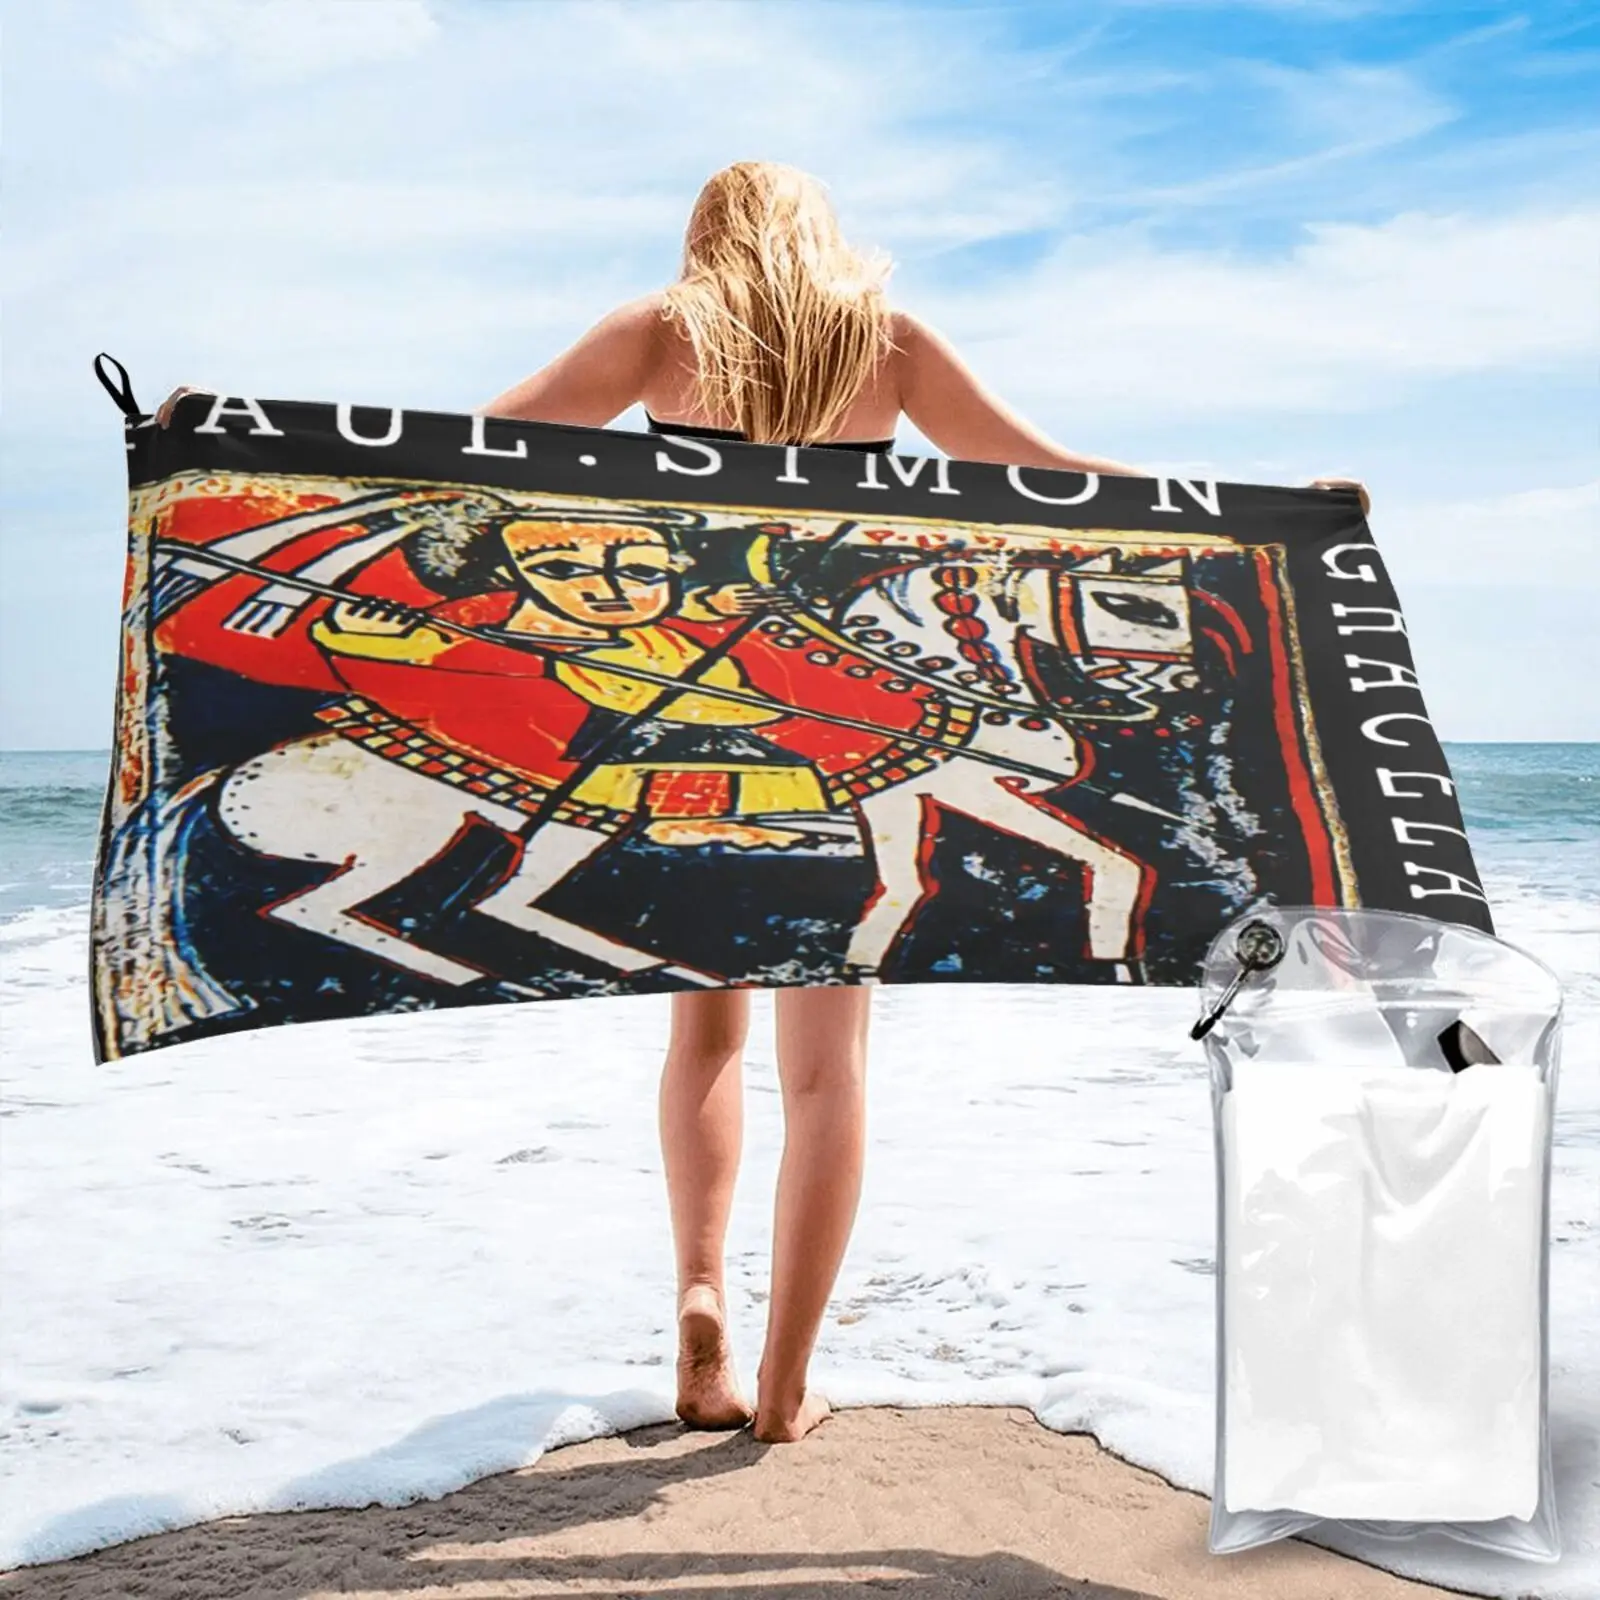 

Пляжное полотенце 80S 1987 Paul Simon Graceland с рисунком, Большое банное полотенце для лица и душа, Товары для ванной комнаты, сауна для дома